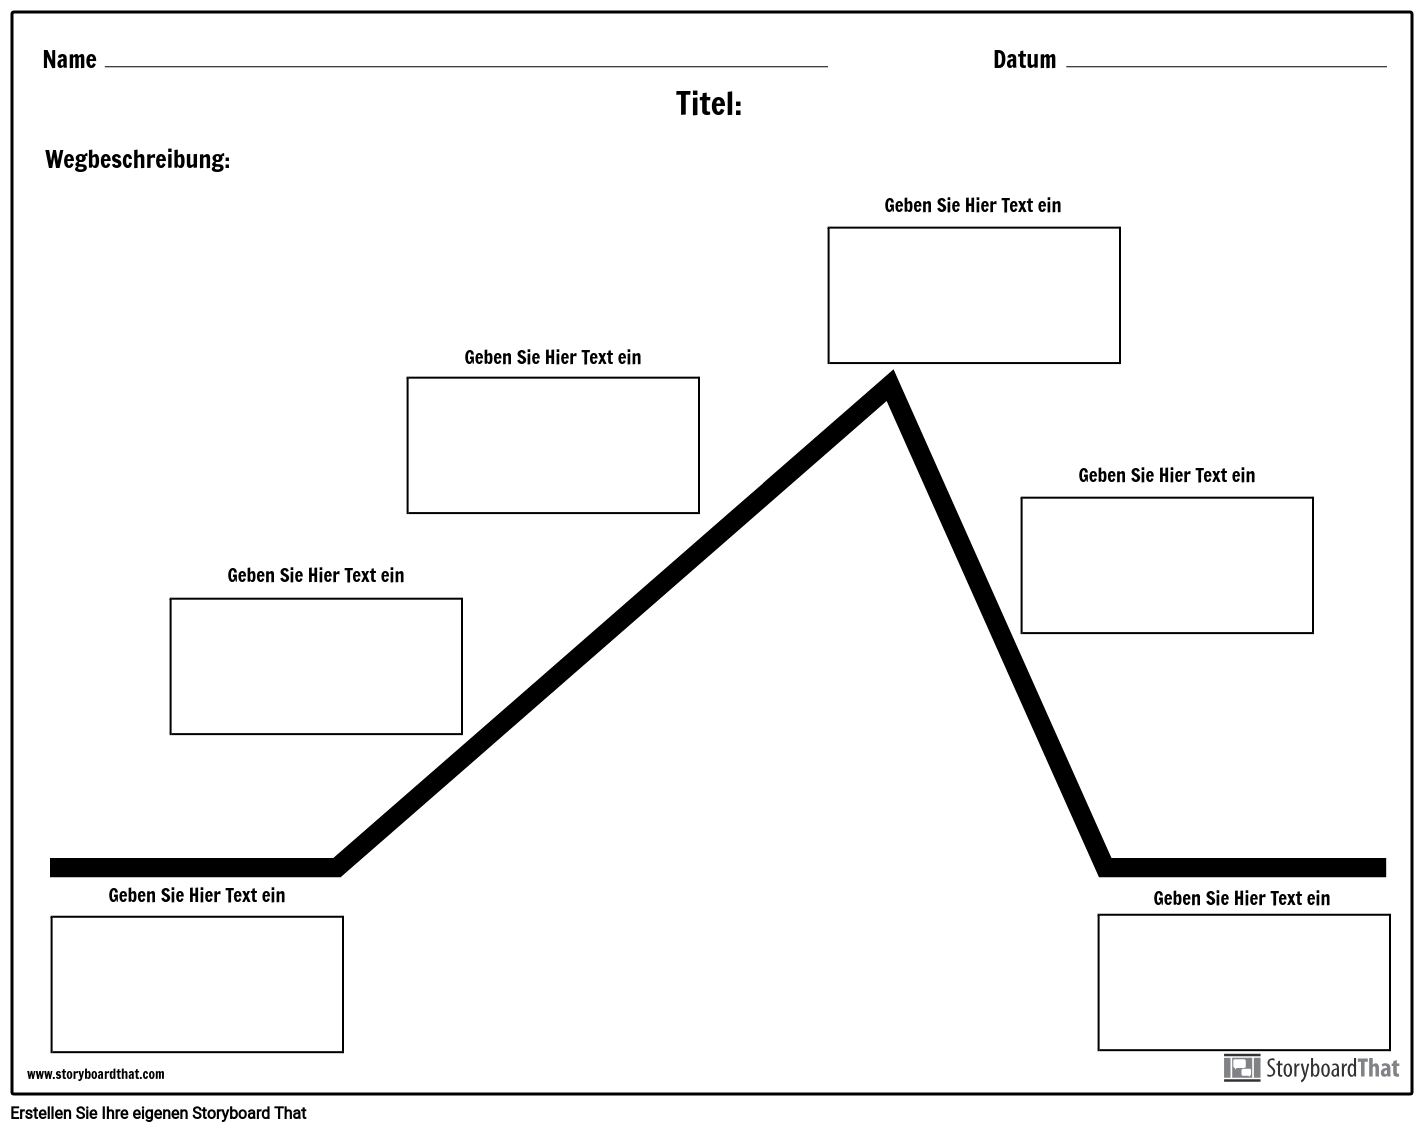 plot-diagramm-storyboard-por-de-examples